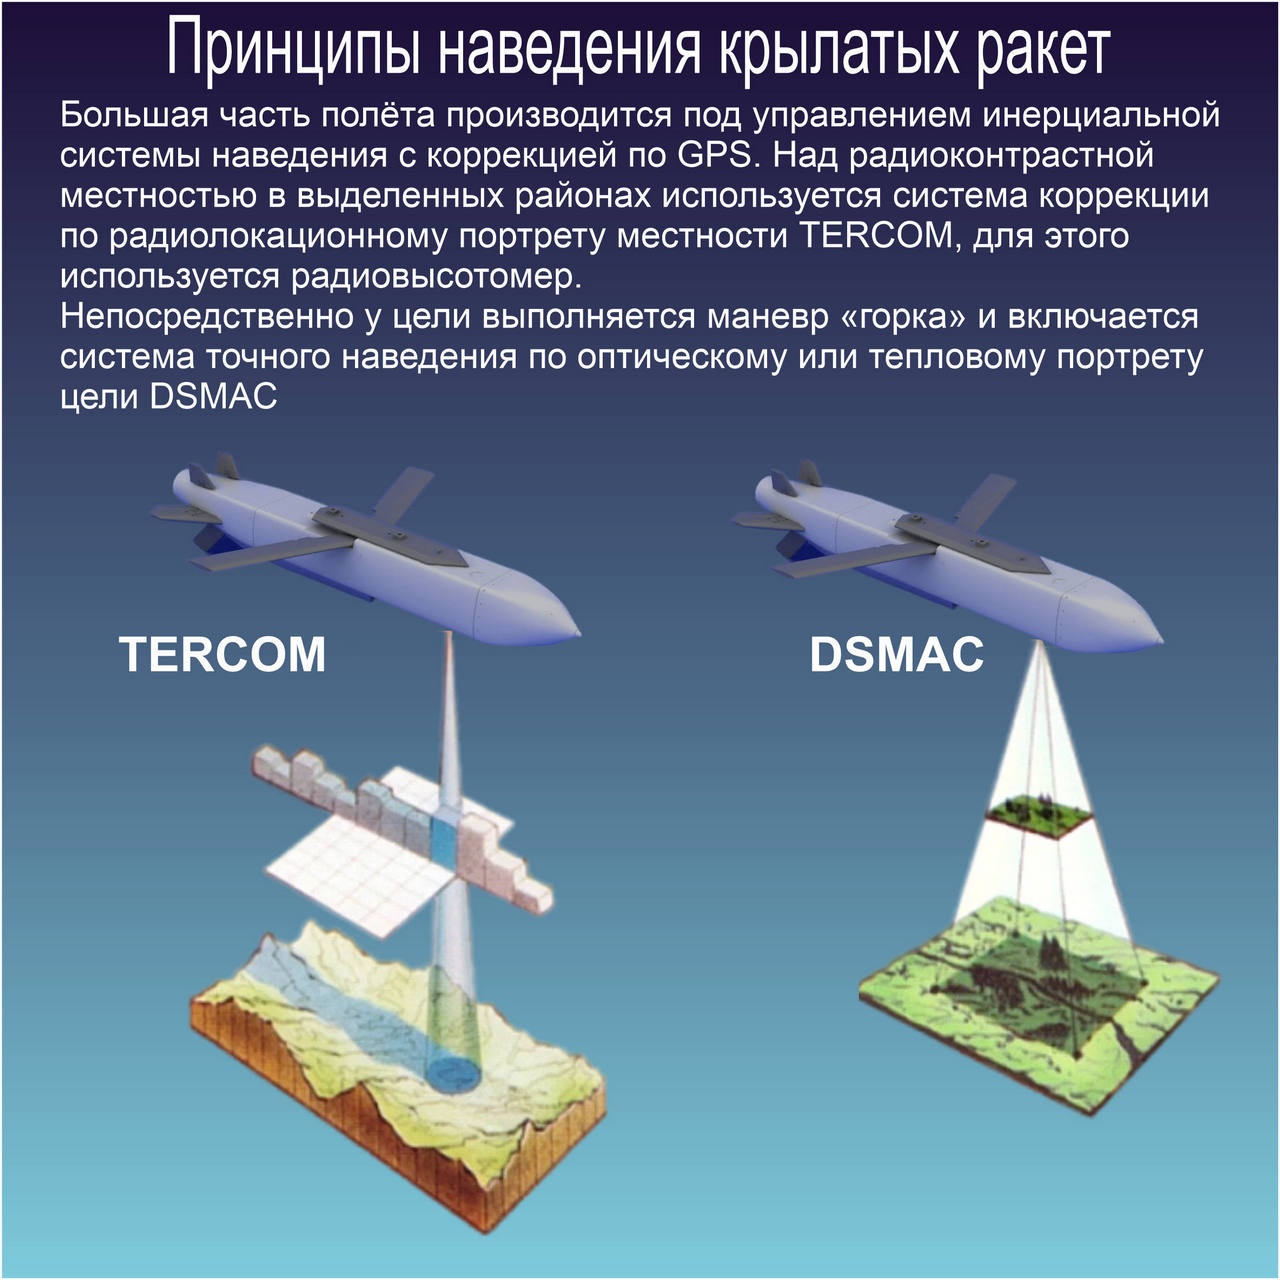 Схема, объясняющая принципы наведения крылатых ракет.